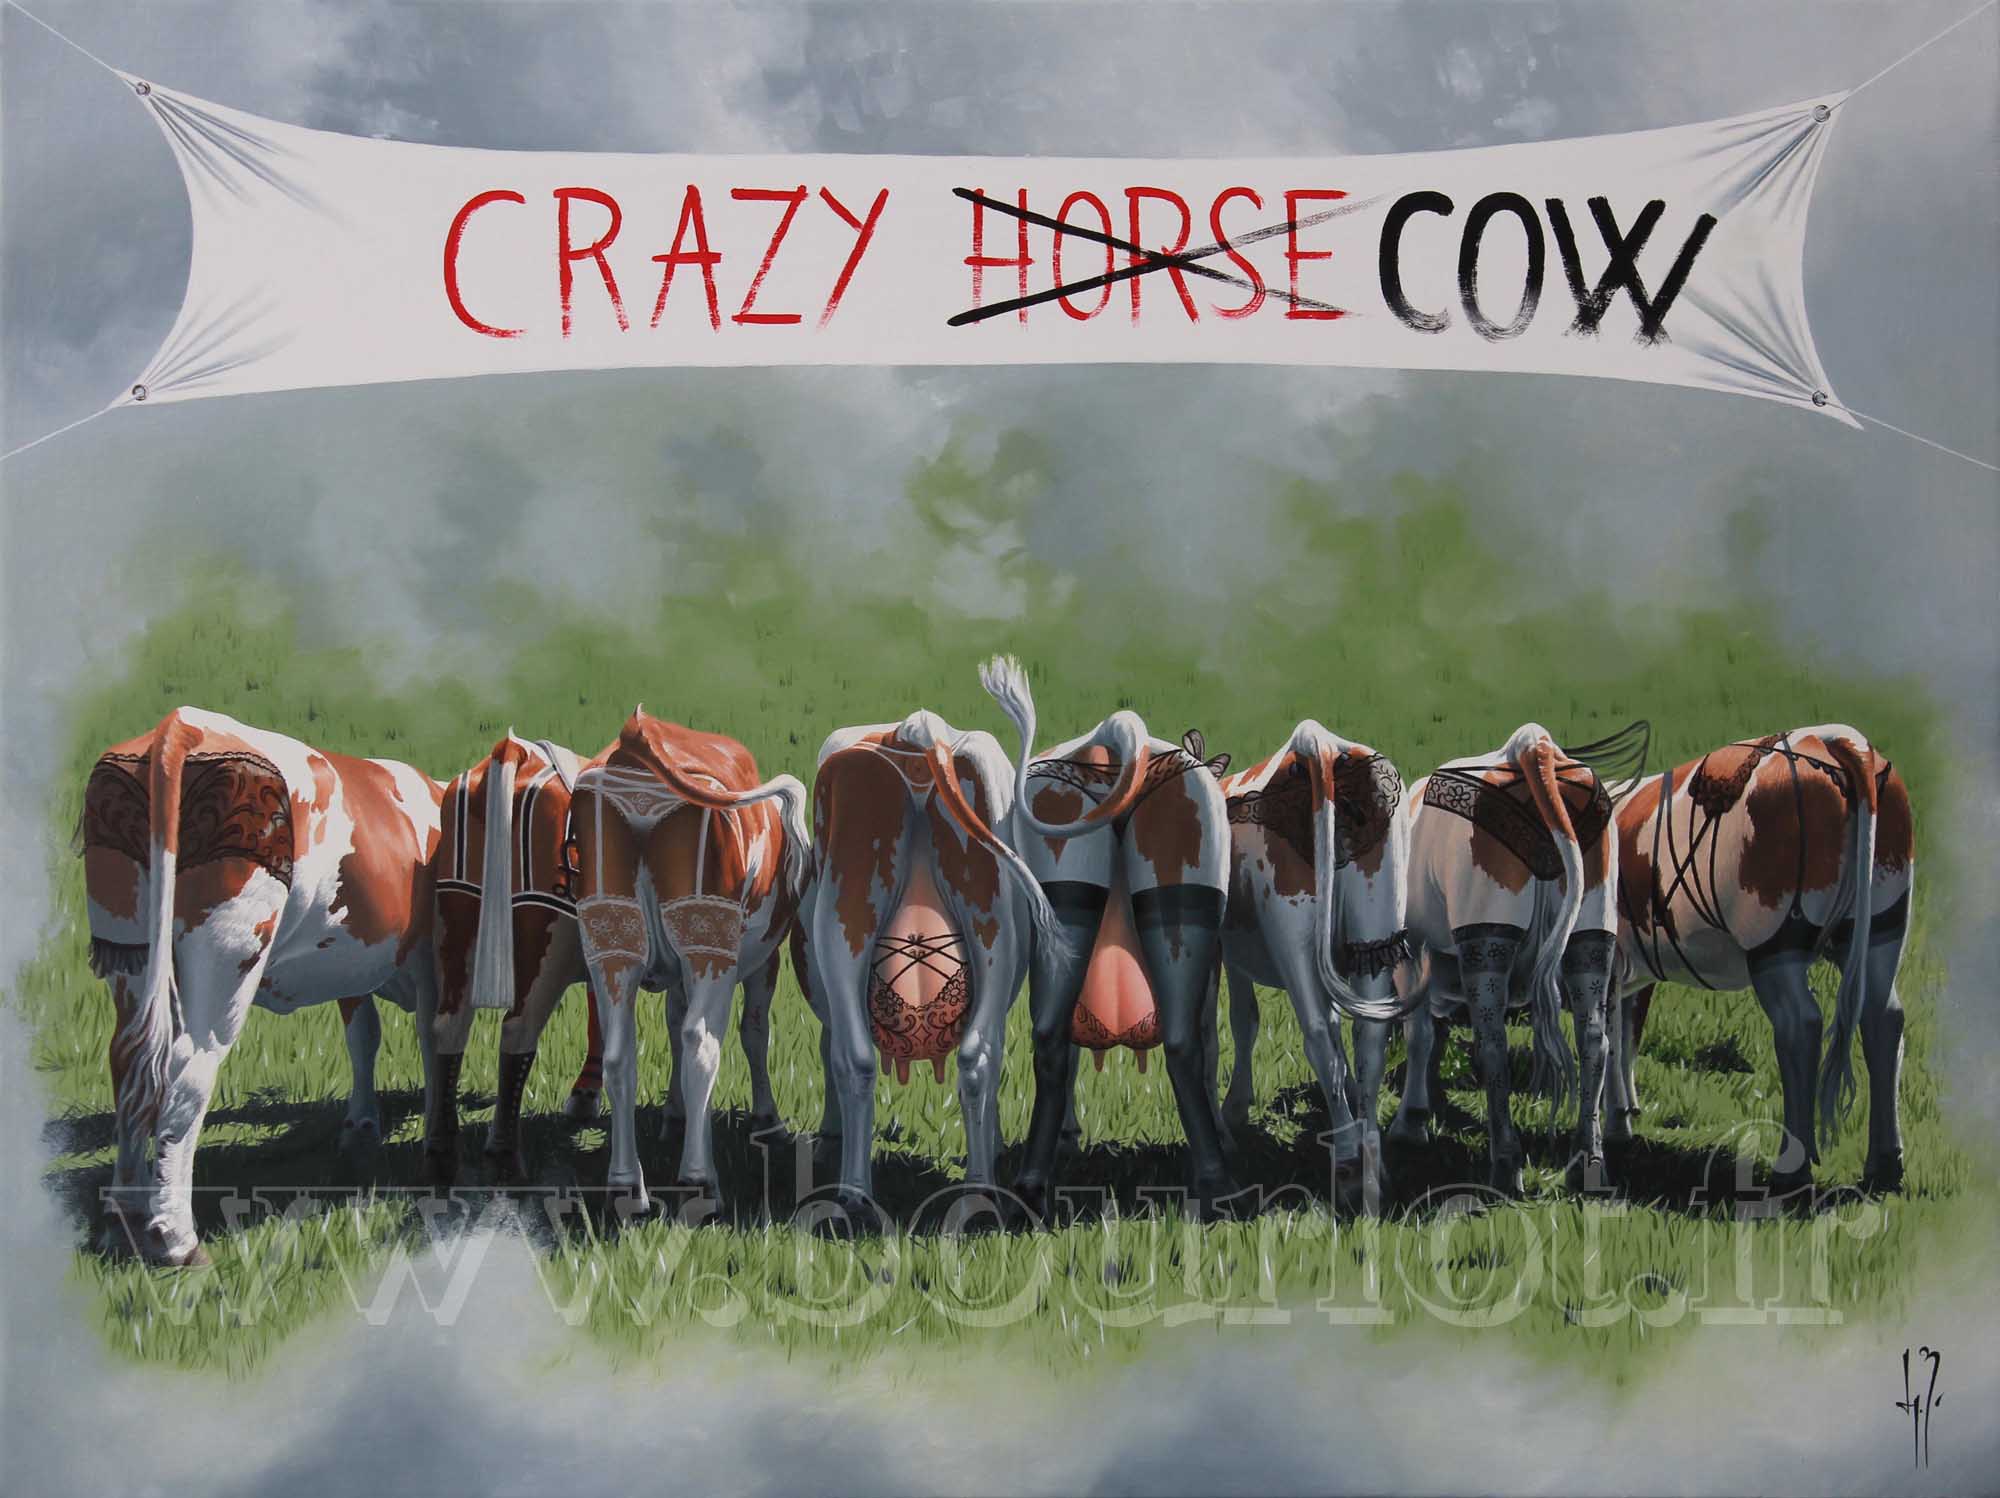 Crazy cow